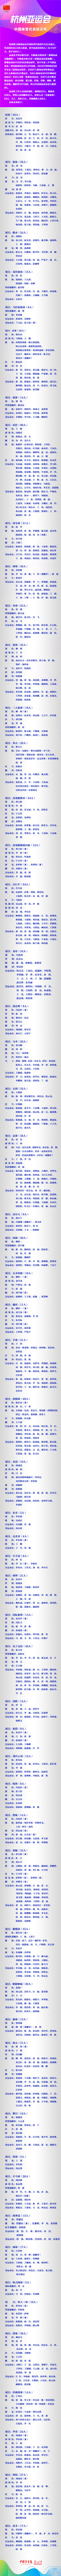 杭州第19届亚运会中国体育代表团名单